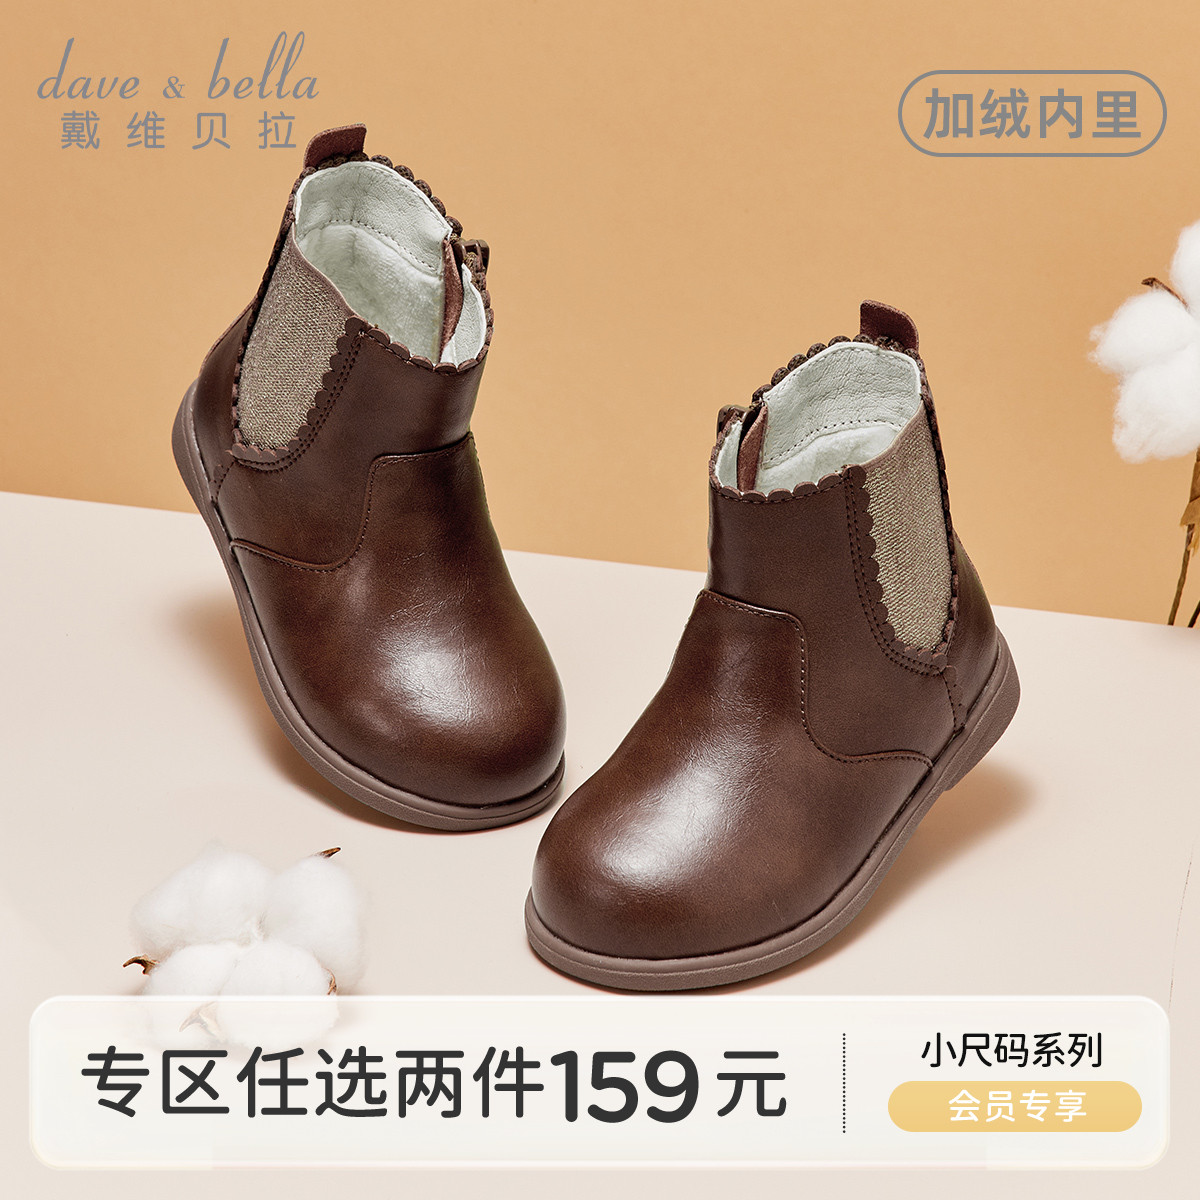 【专区2件159元】戴维贝拉女童皮靴冬季童鞋宝宝靴子儿童加绒靴